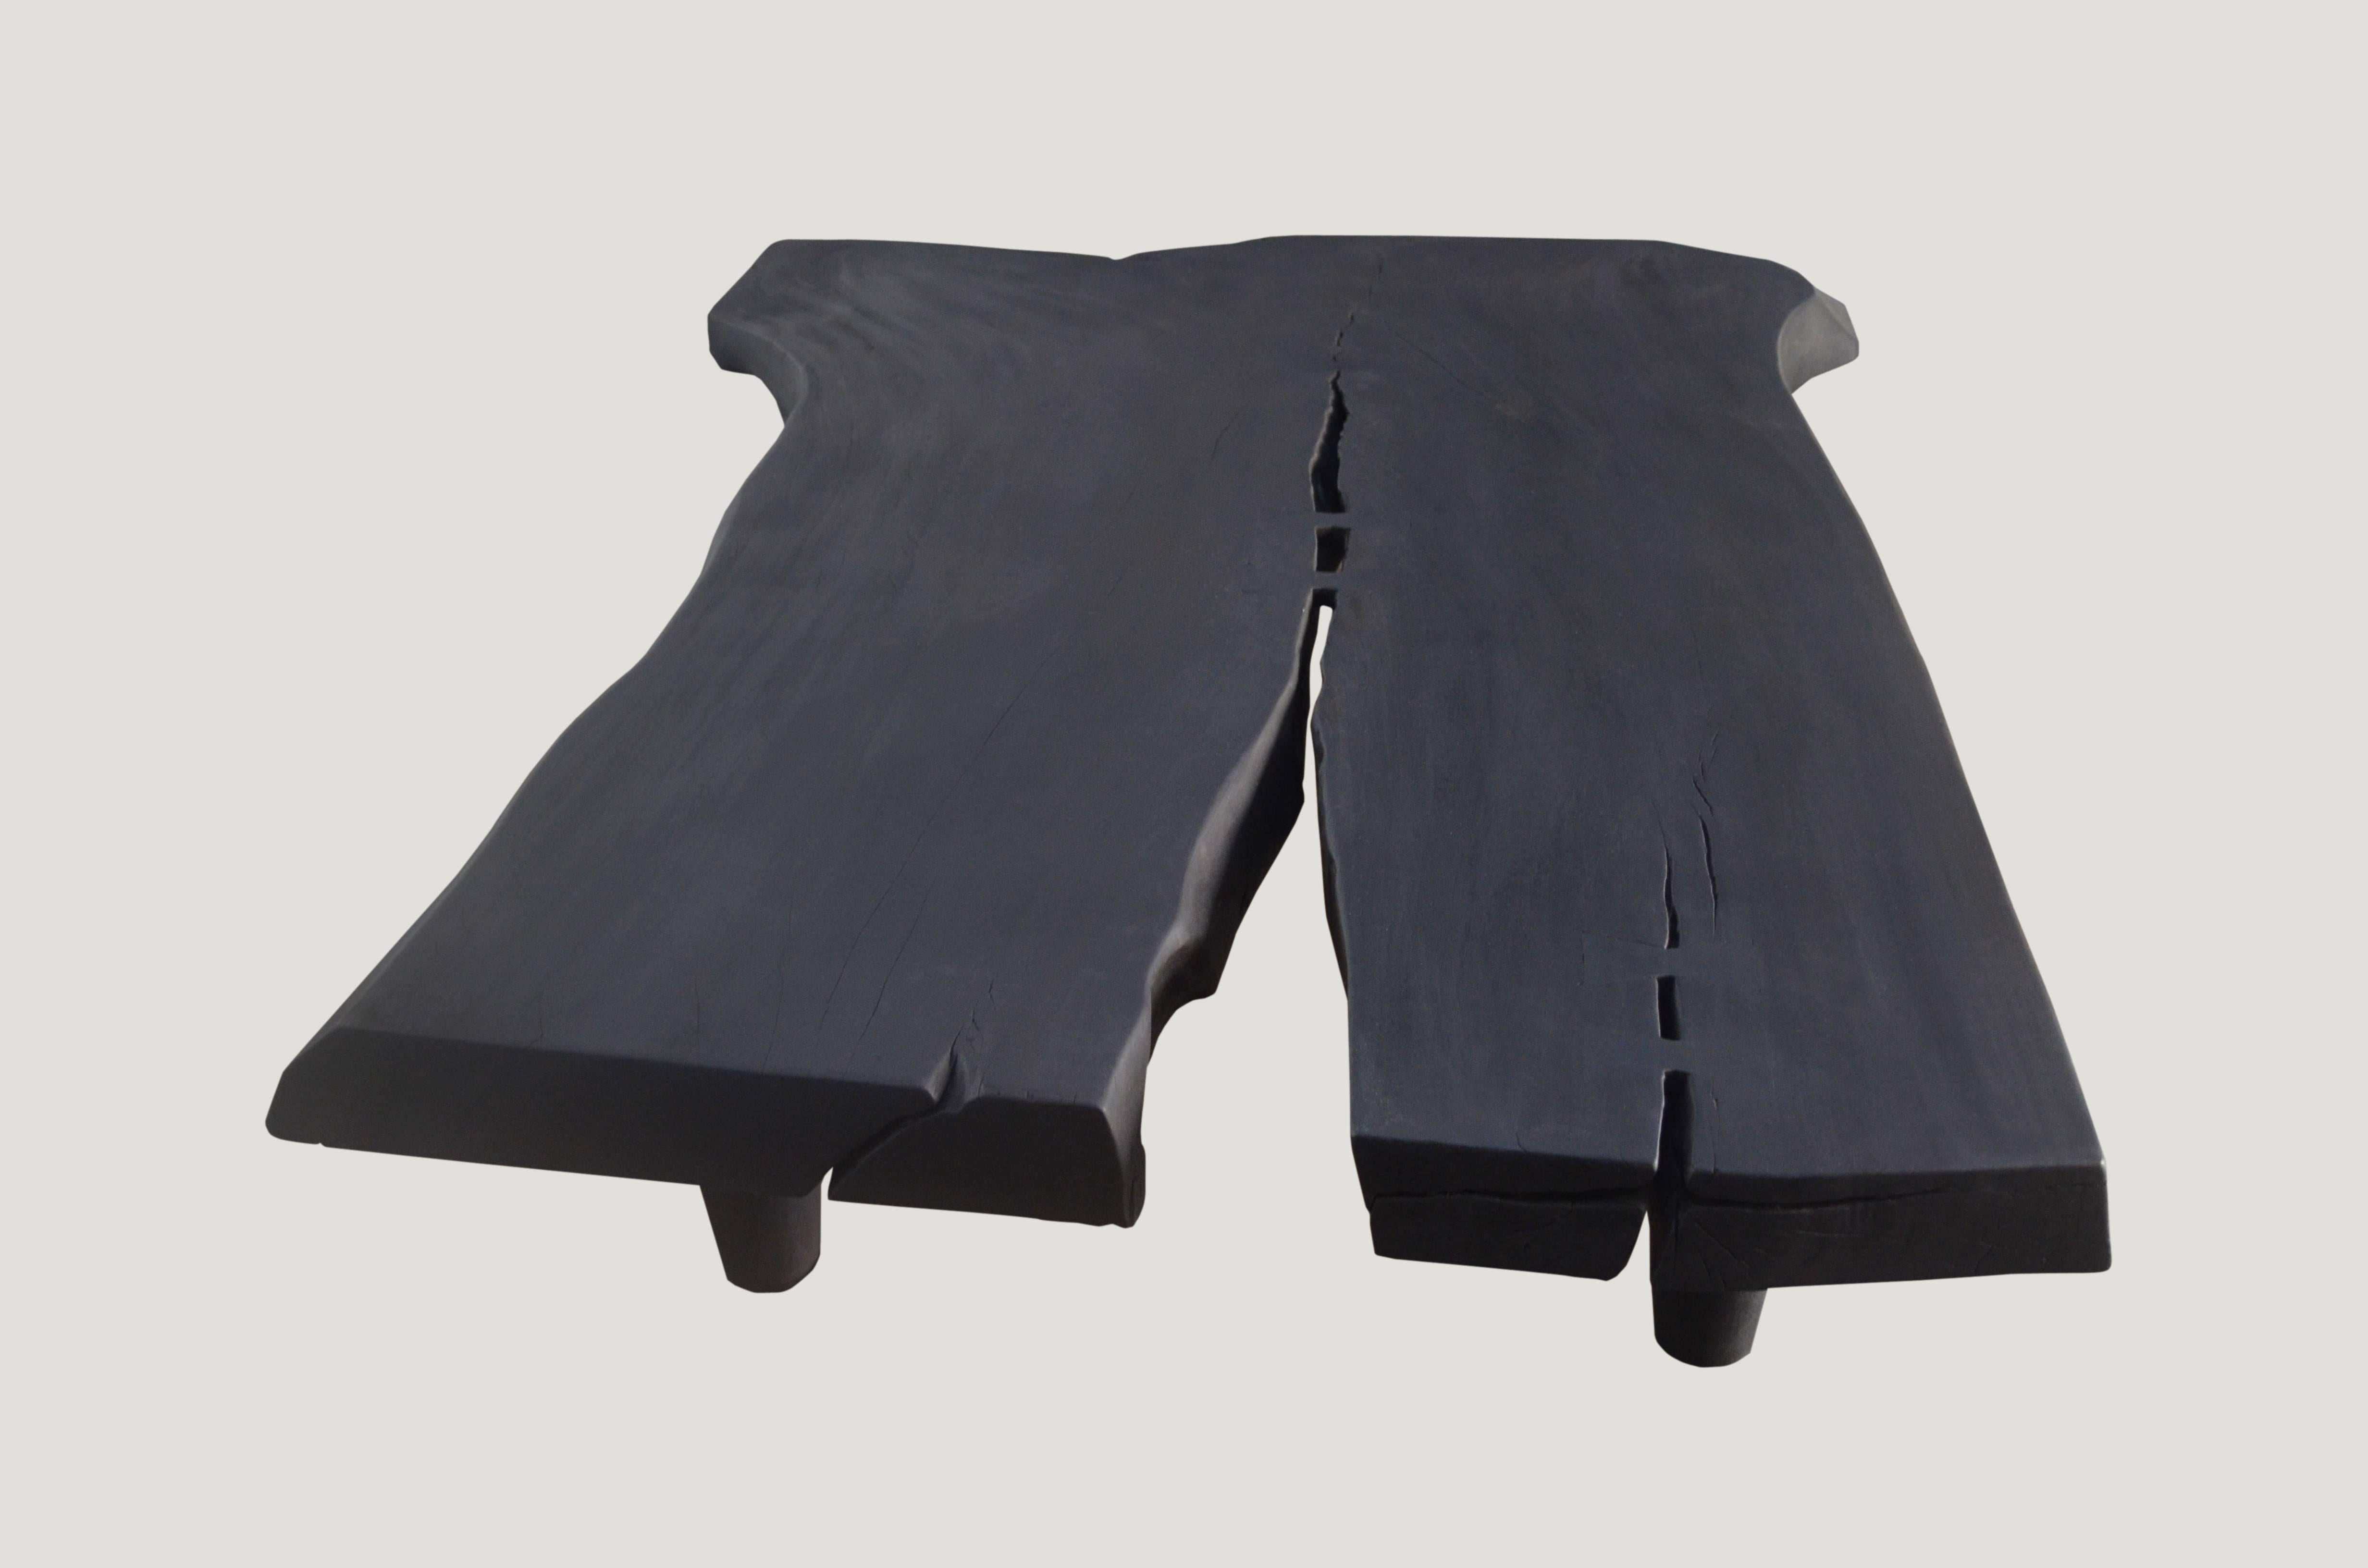 Table basse en bois de suar d'une seule dalle récupérée de 4″ d'épaisseur, avec des détails de papillon ajoutés. Une combinaison parfaite de moderne et d'organique. Commande personnalisée disponible. 

La collection triple burnt représente une ligne